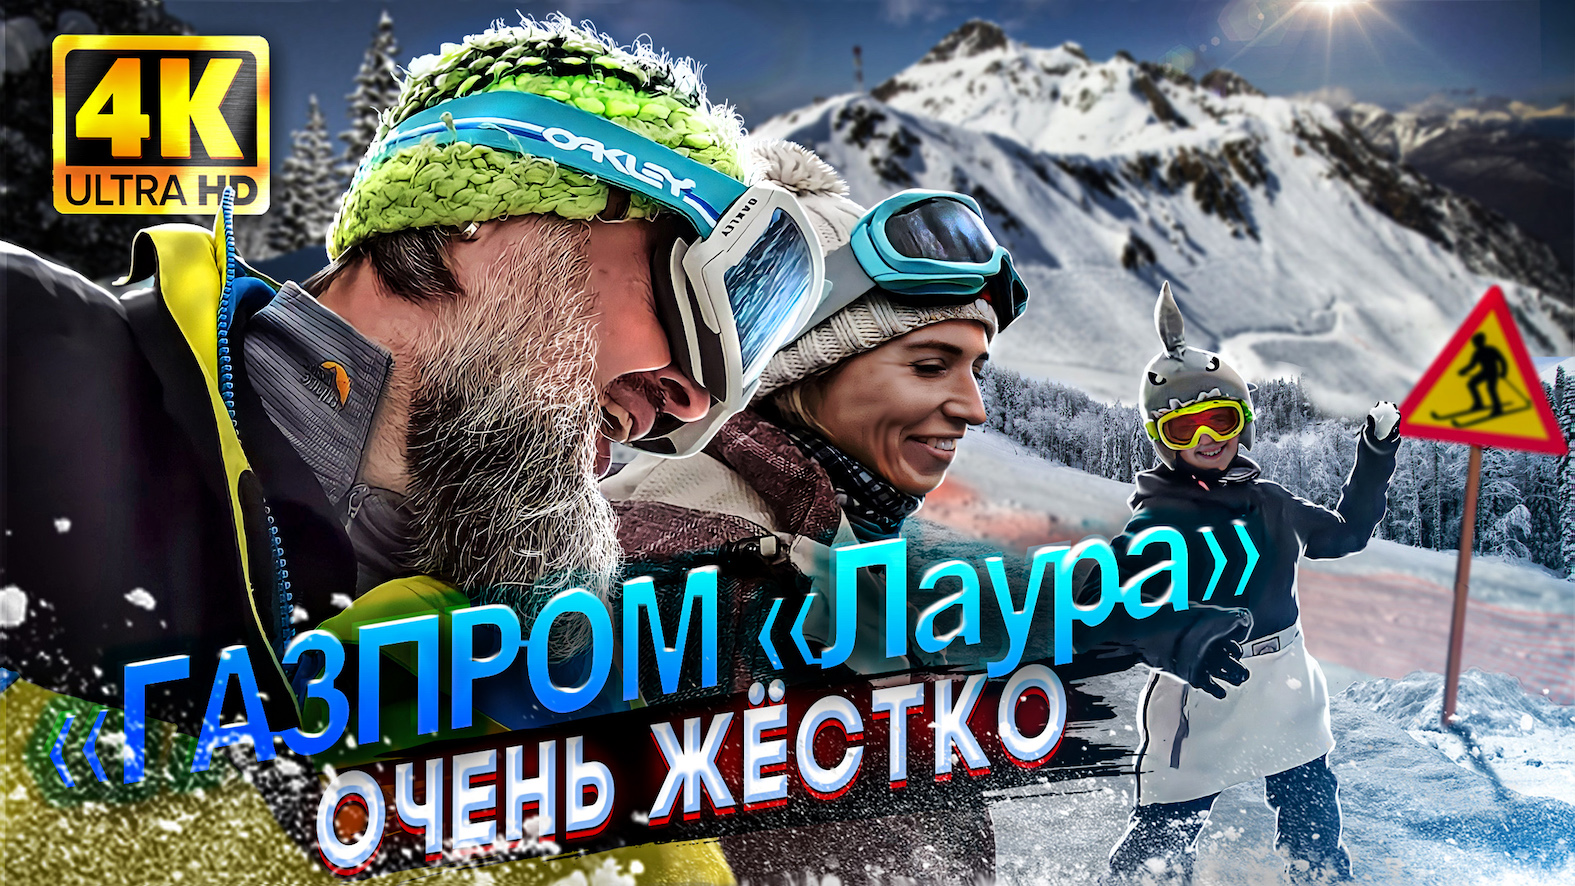 4K Газпром Лаура в Марте/Есть ли снег/Количество людей на трассе/Наш лайф-стайл день